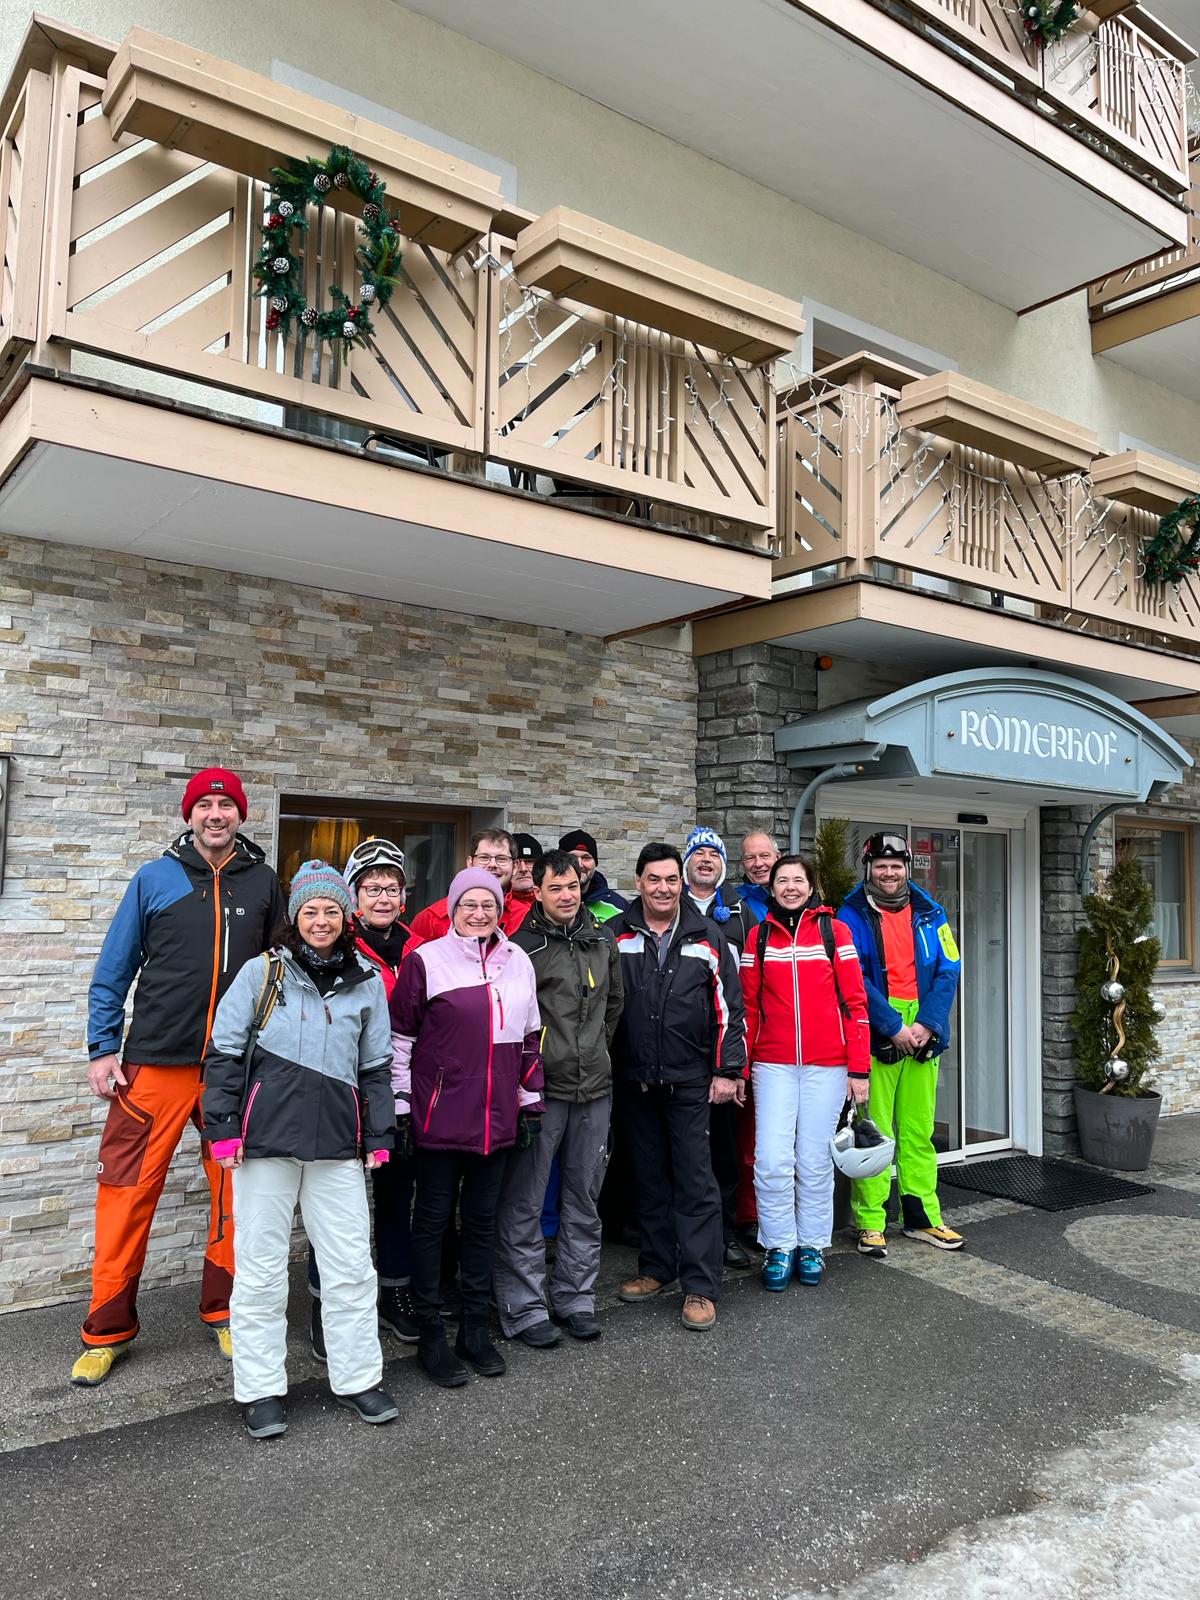 Die Skigruppe vor dem Hotel Römerhof in Fusch an der Großglocknerstraße 